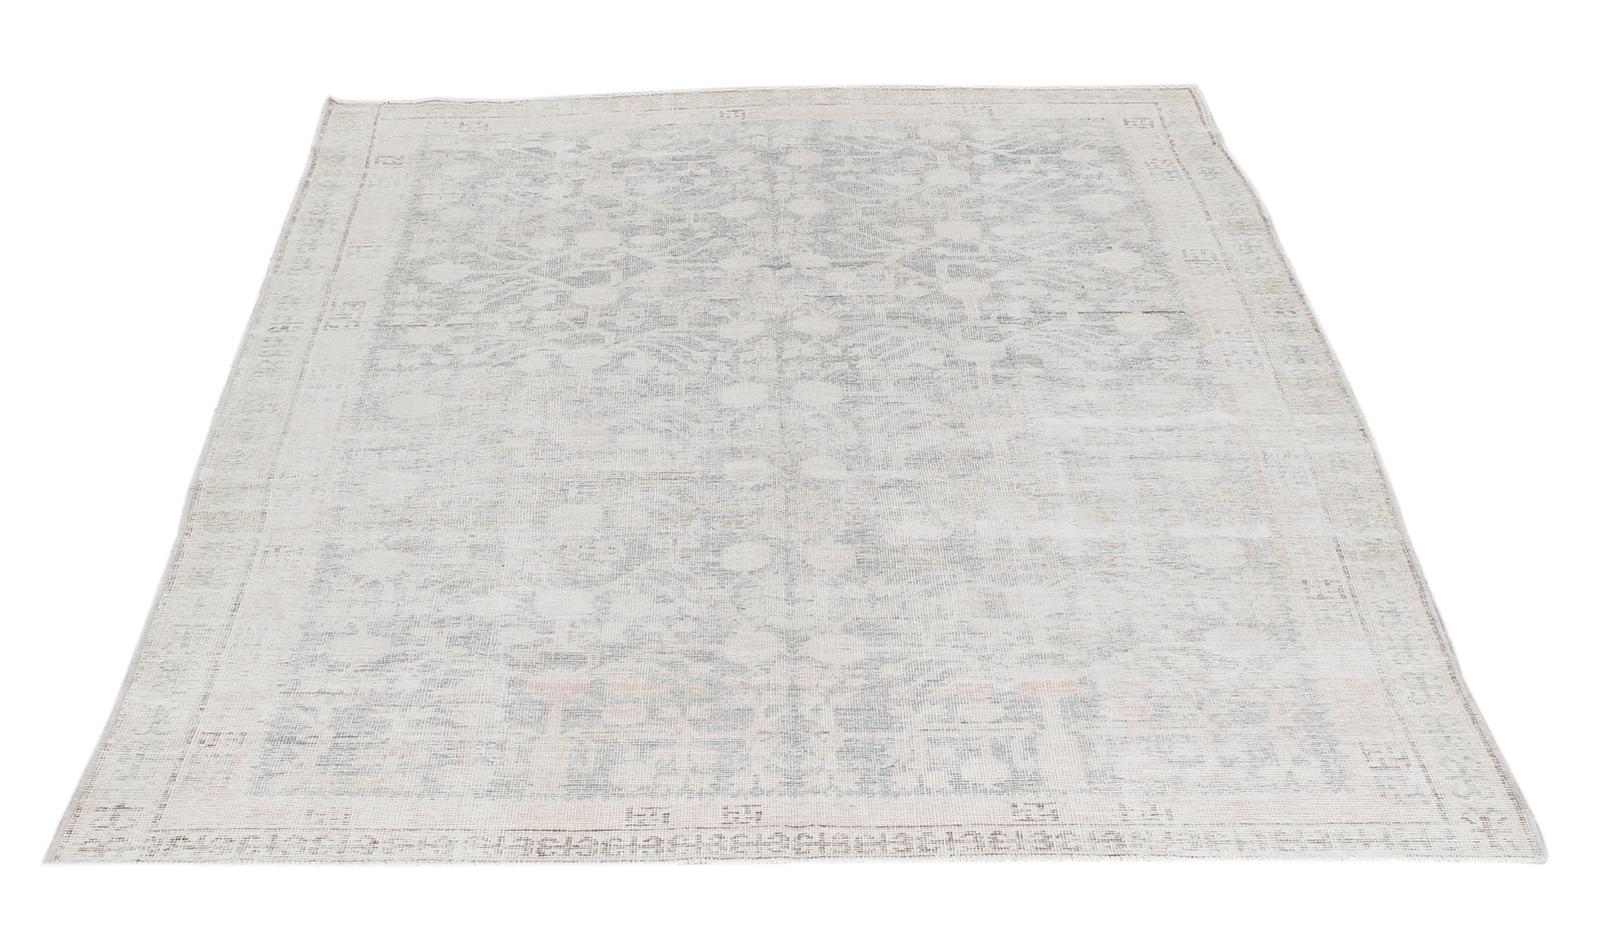 Khotan-Teppiche werden in Ostturkestan hergestellt und wegen ihrer Nähe zum gleichnamigen kulturellen Zentrum auch als Samarkand-Teppiche bezeichnet. Khotan-Teppiche zeichnen sich durch ihre geometrischen Muster aus, die von zarten Pastelltönen bis